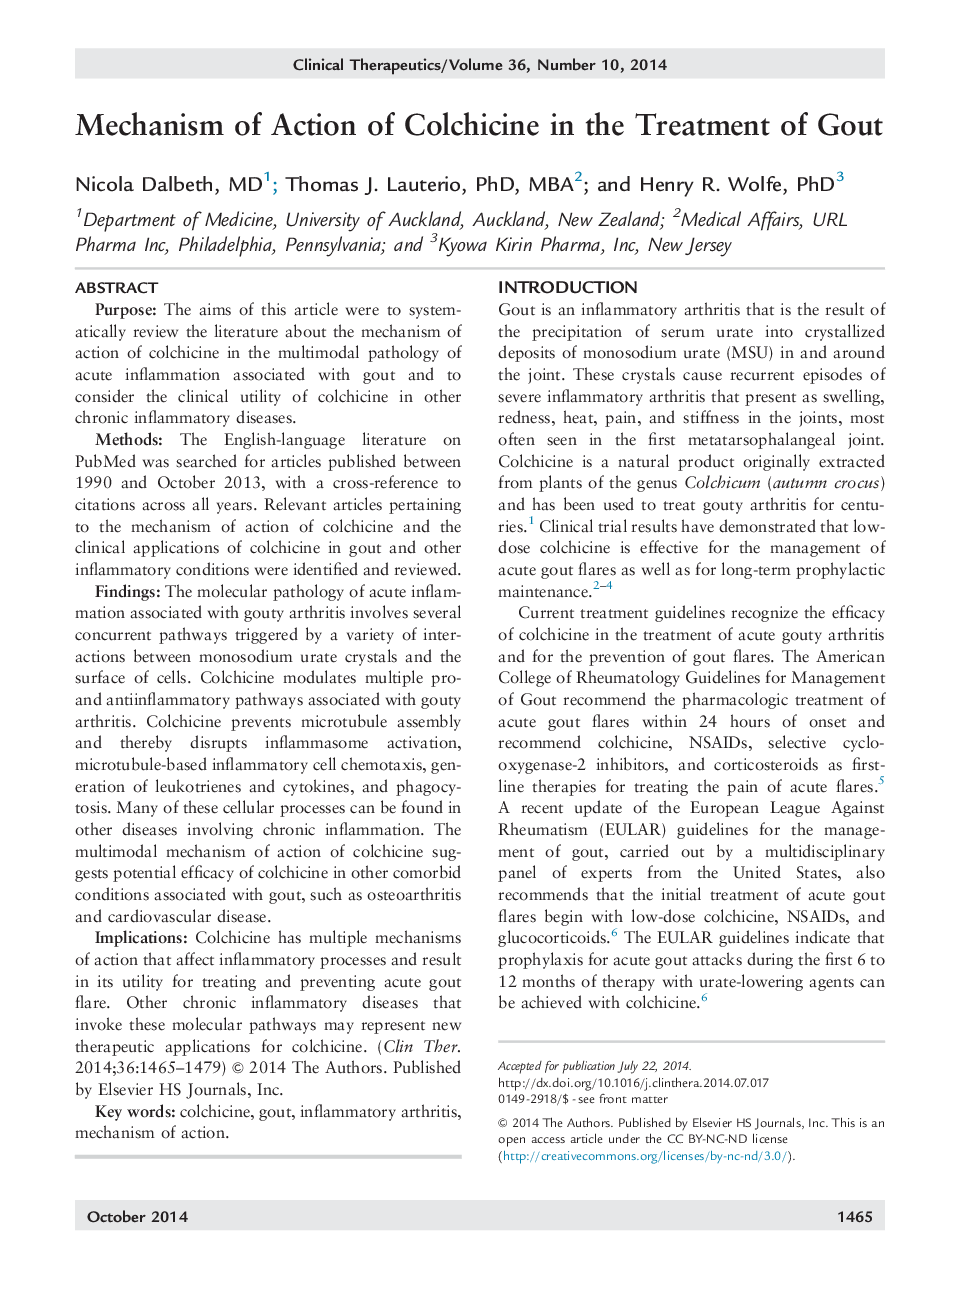 مکانیسم عمل کلشیسین در درمان نقرس 